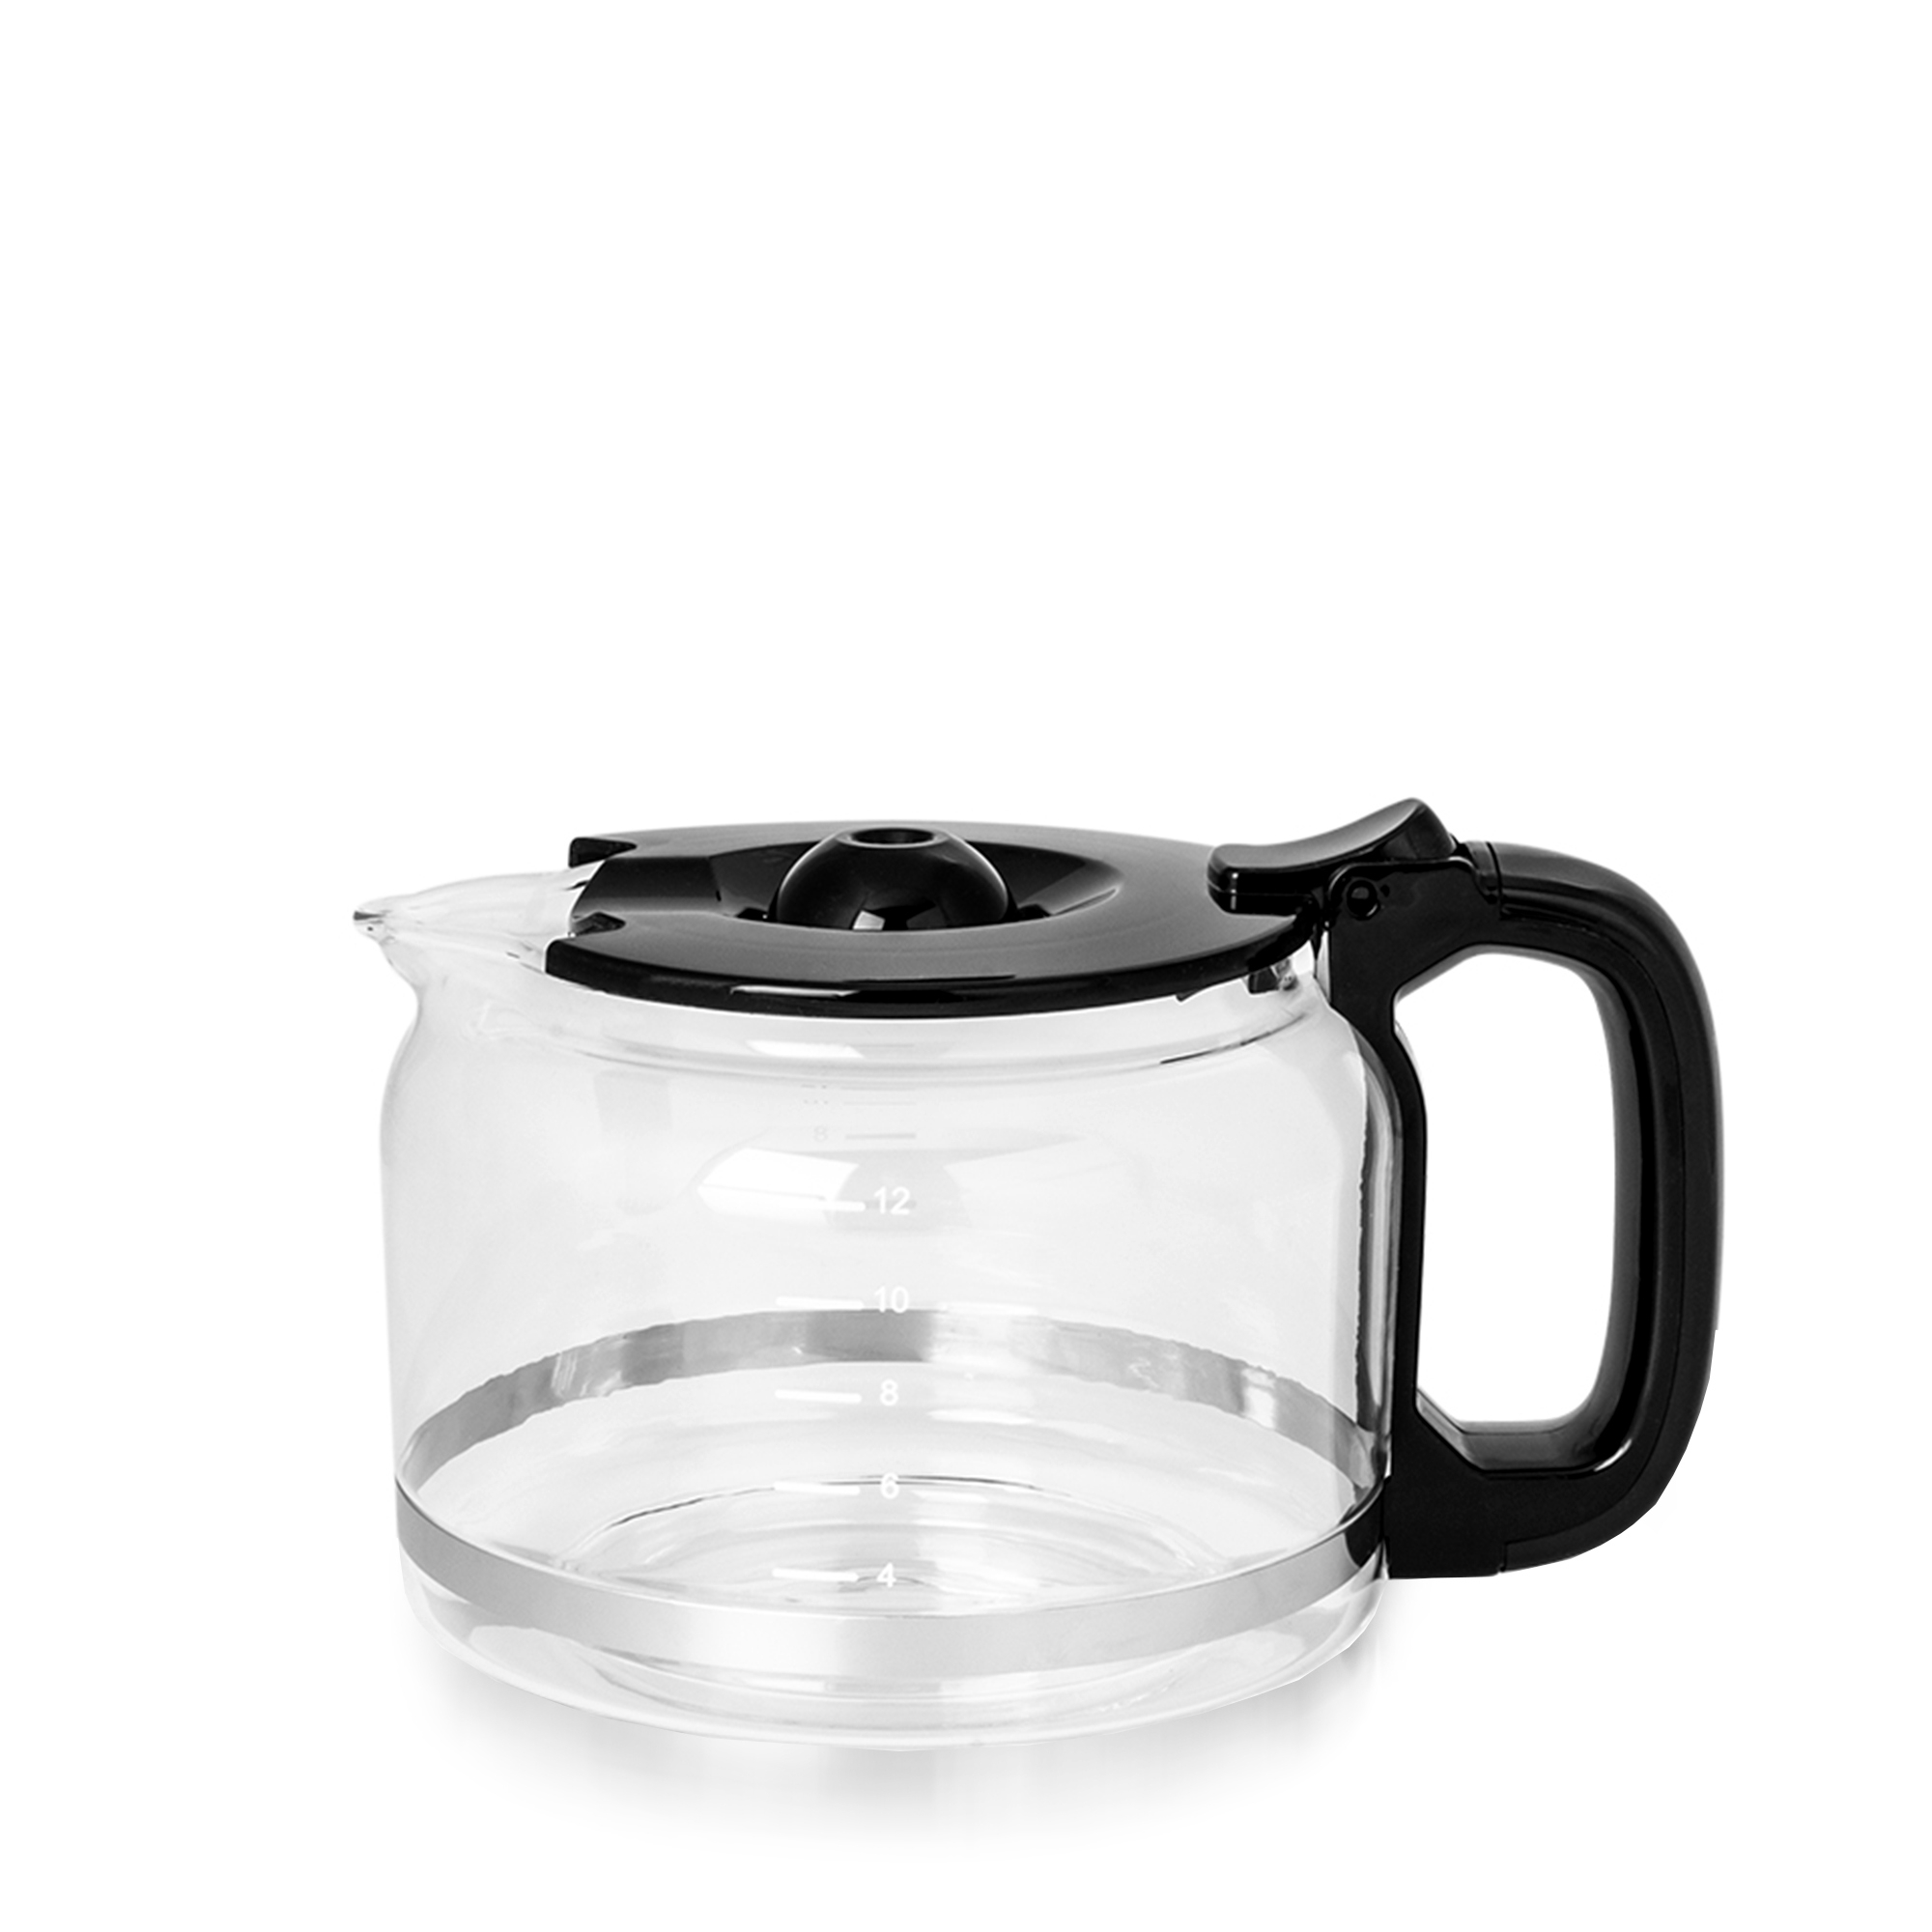 Gastroback - Glass jug for 42711